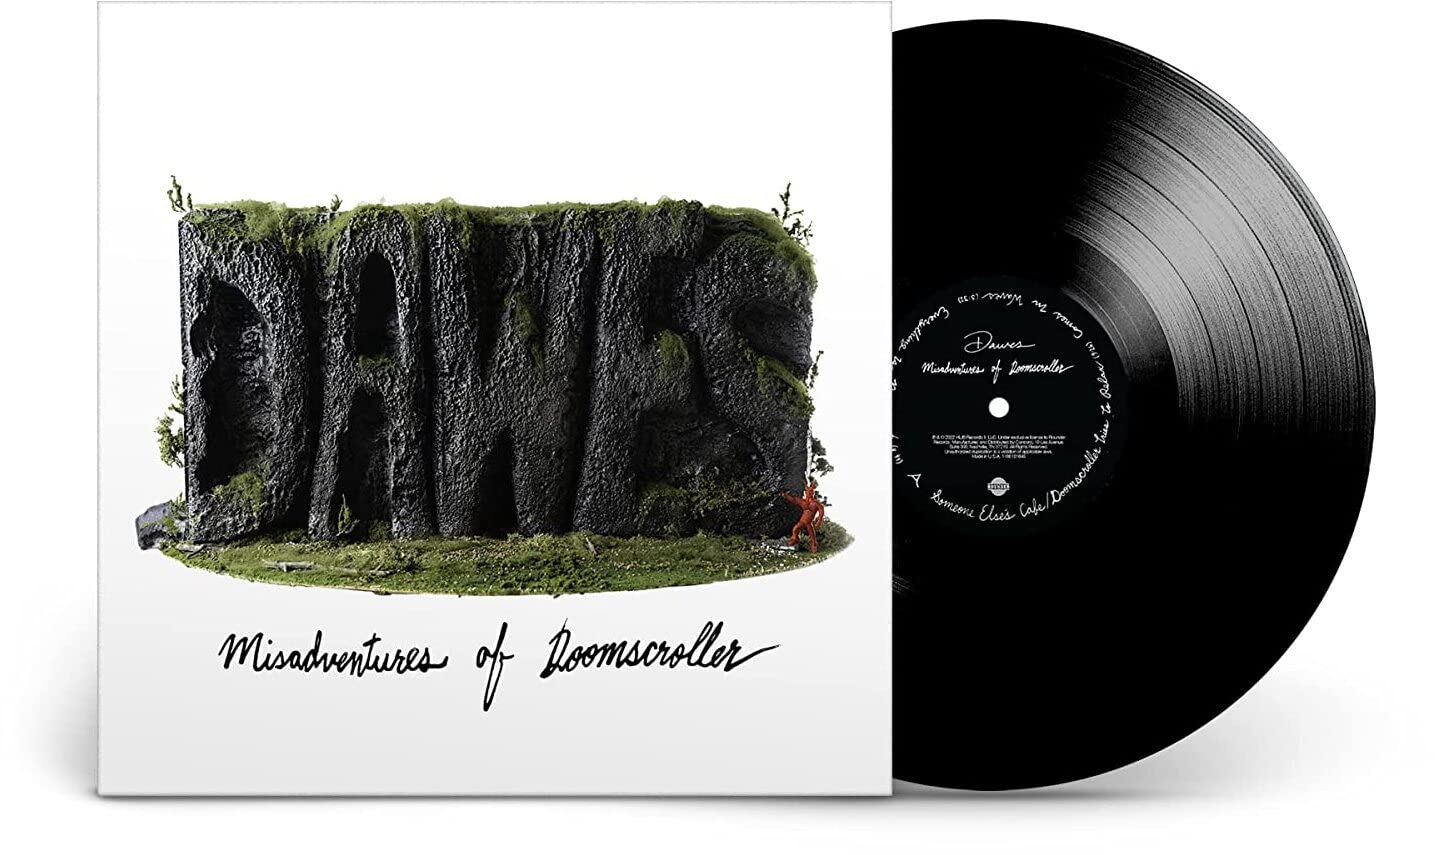 Misadventures Of Doomscroller (Vinyl)